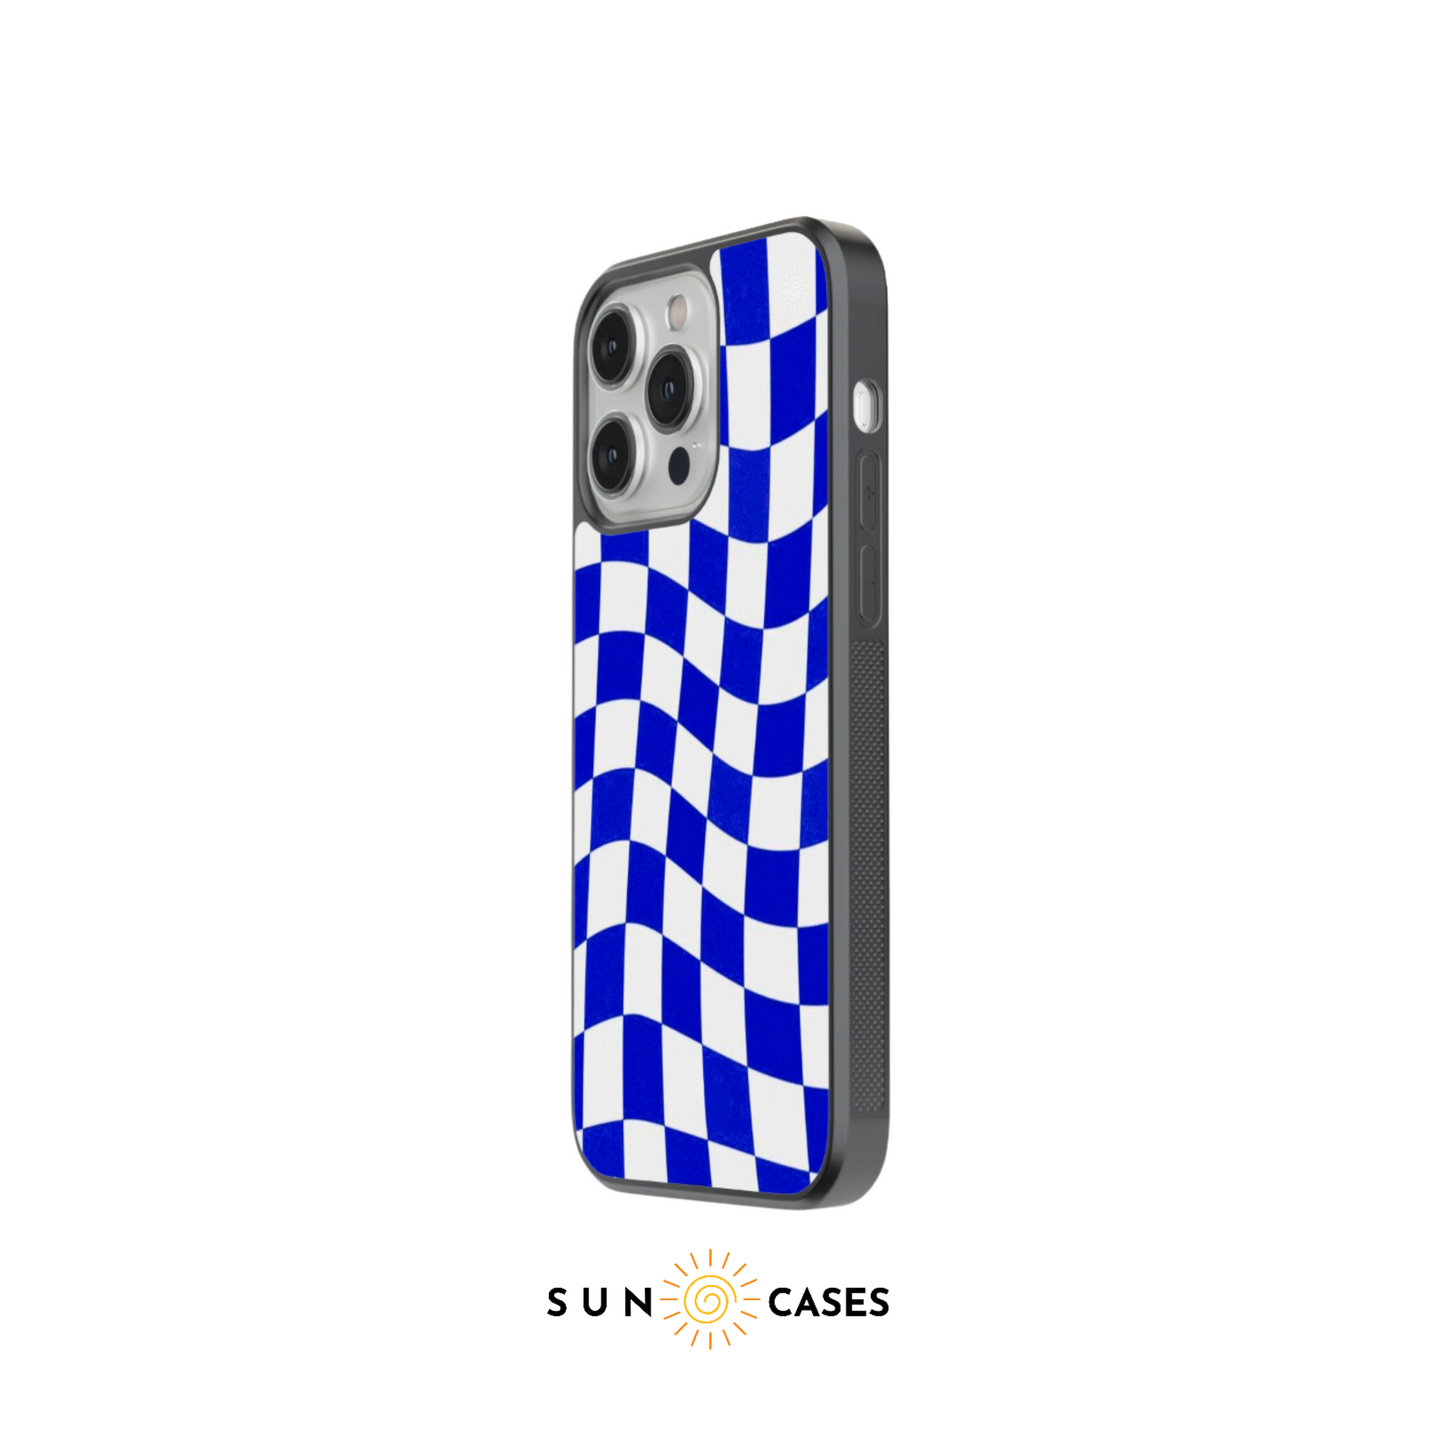 Checkered Case -  Blue Checkered